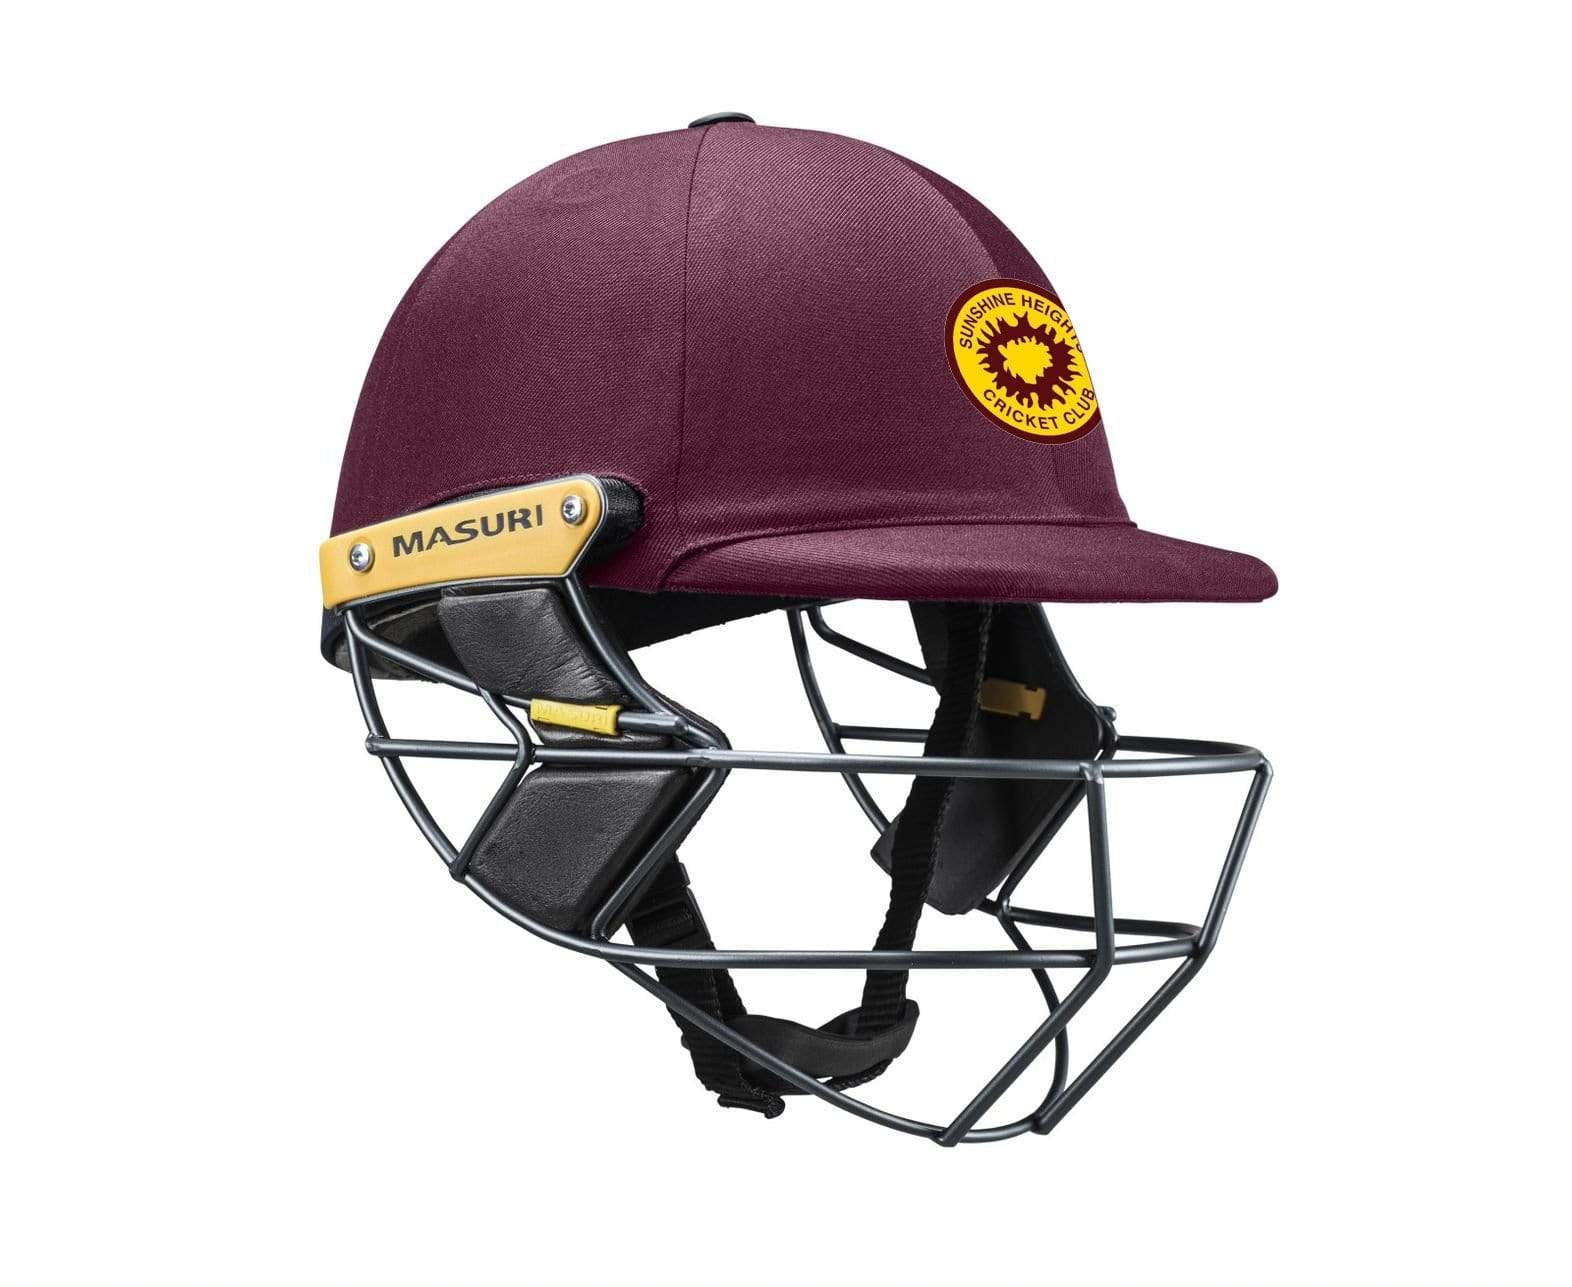 Masuri Club Helmet Sunshine Heights Cricket Club Helmet